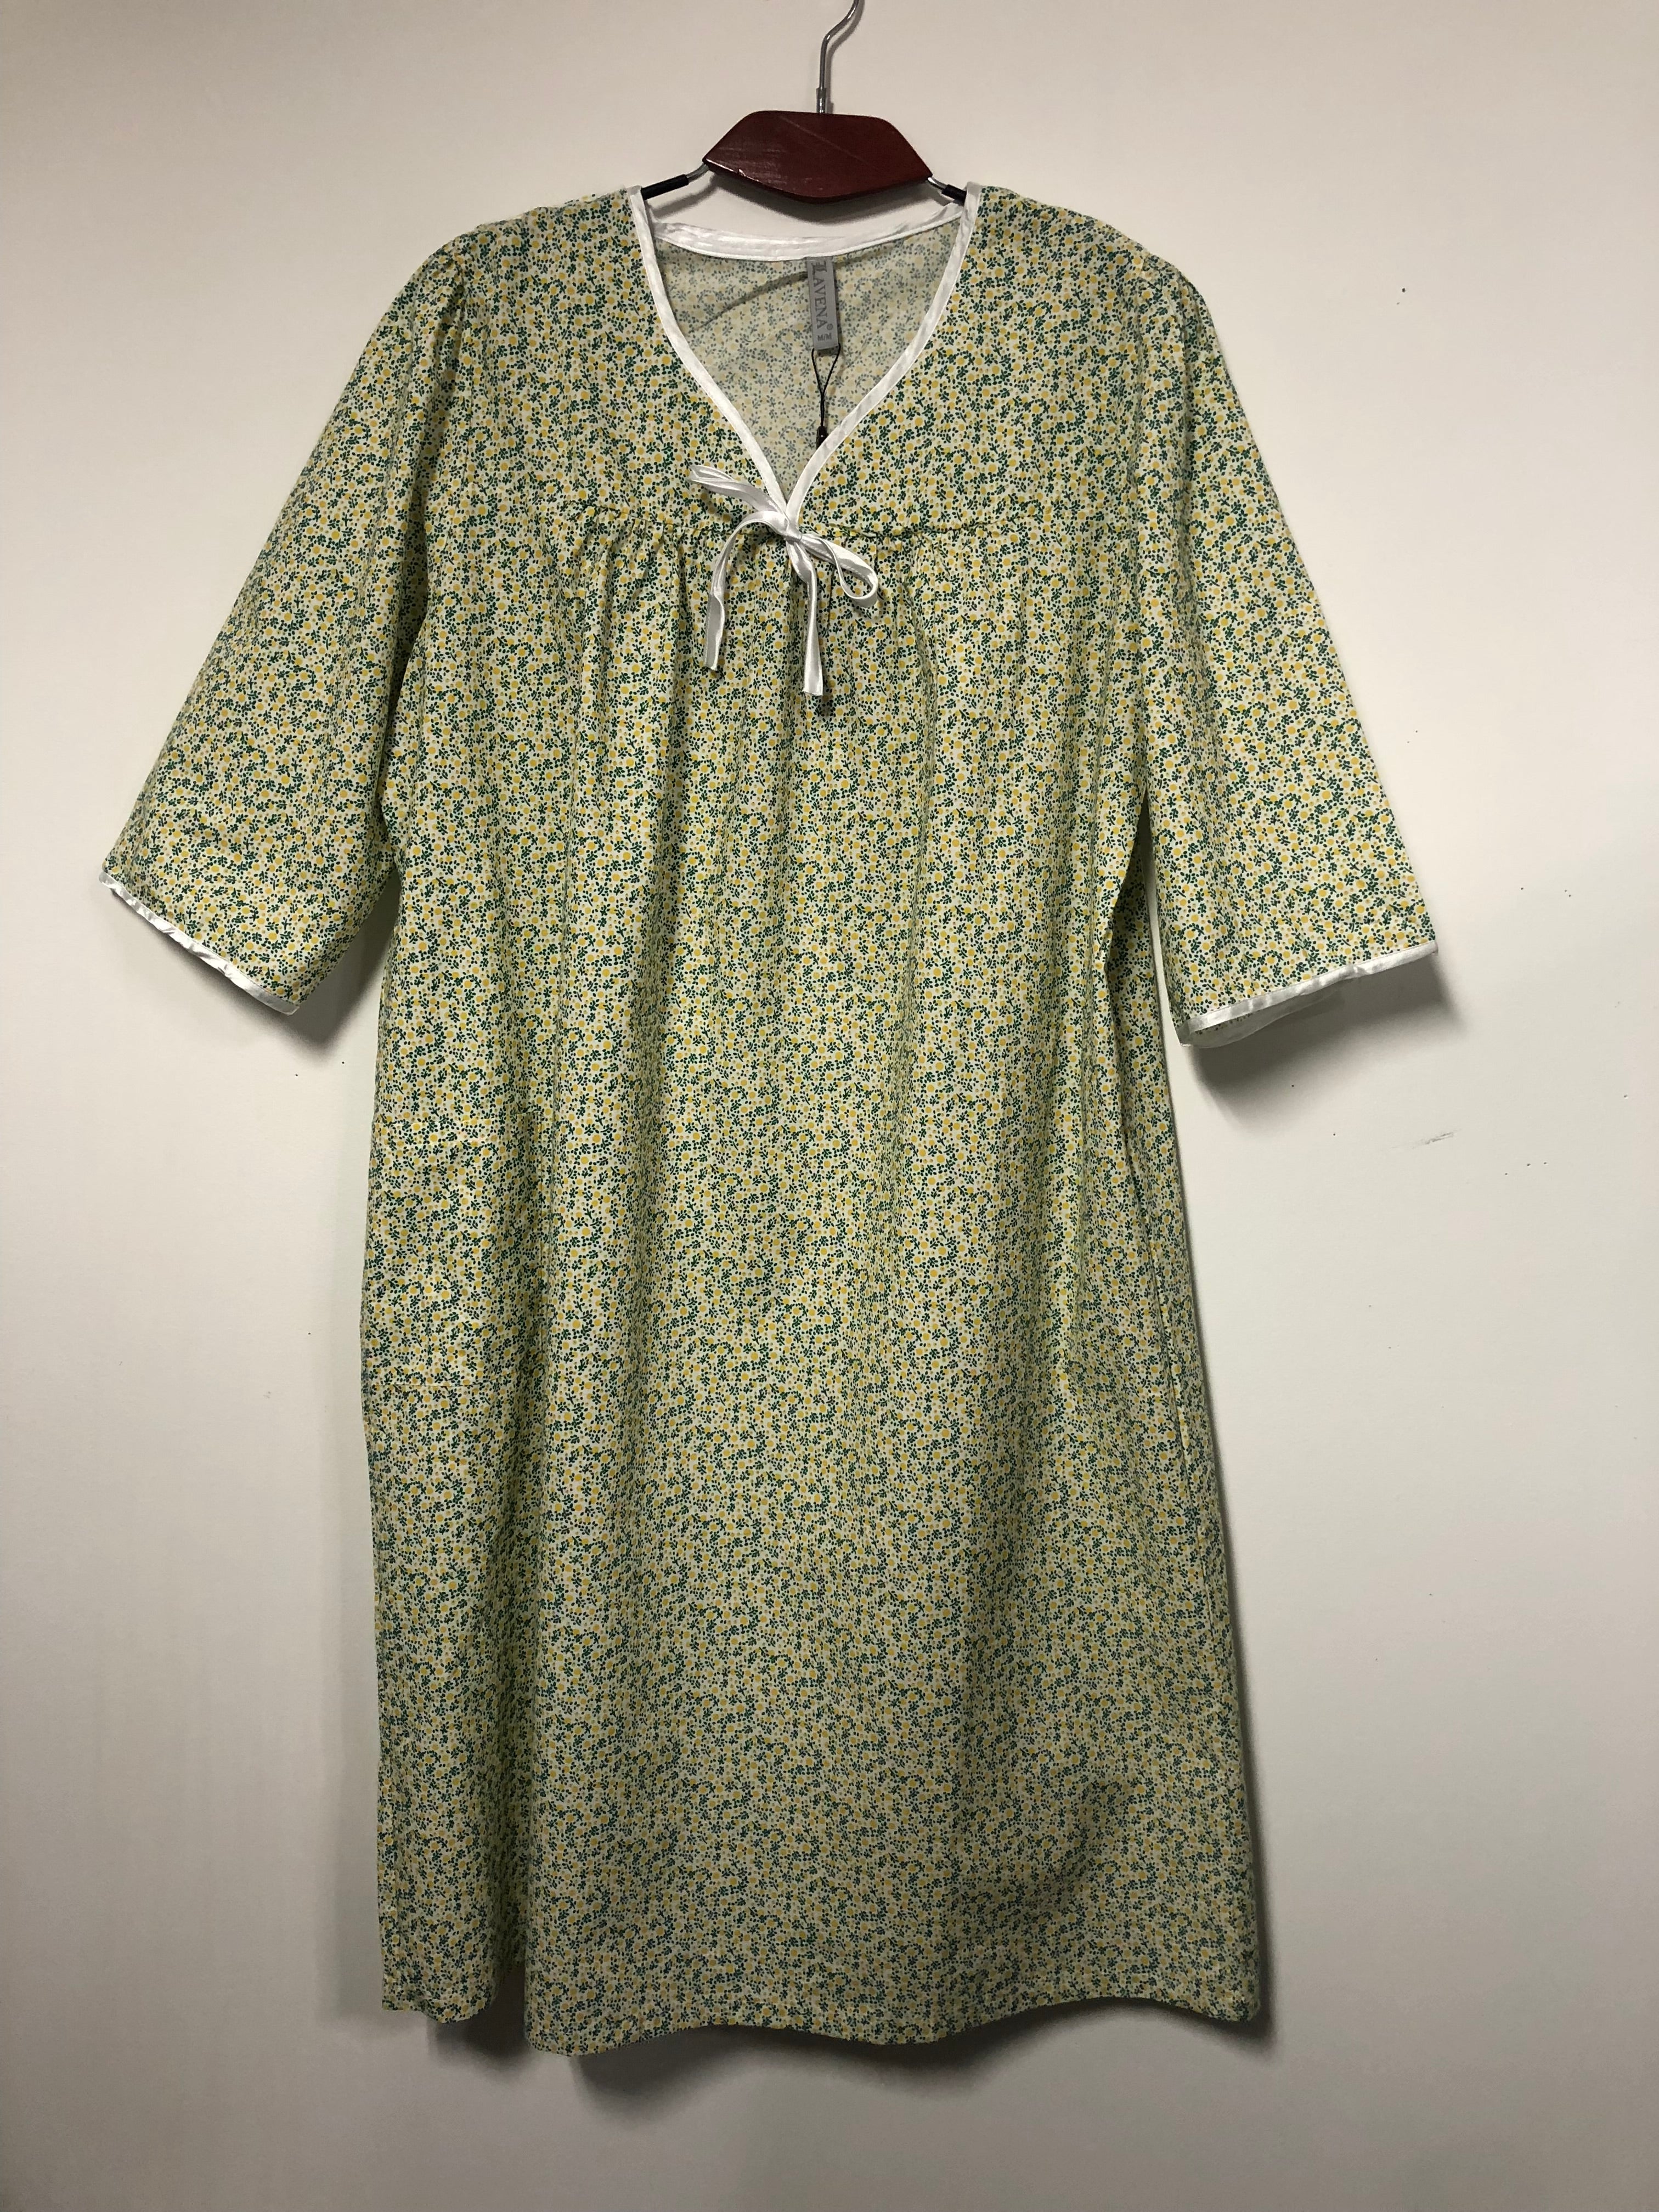 Unisex Medical Hospital Gowns (Dozen) - BH Medwear